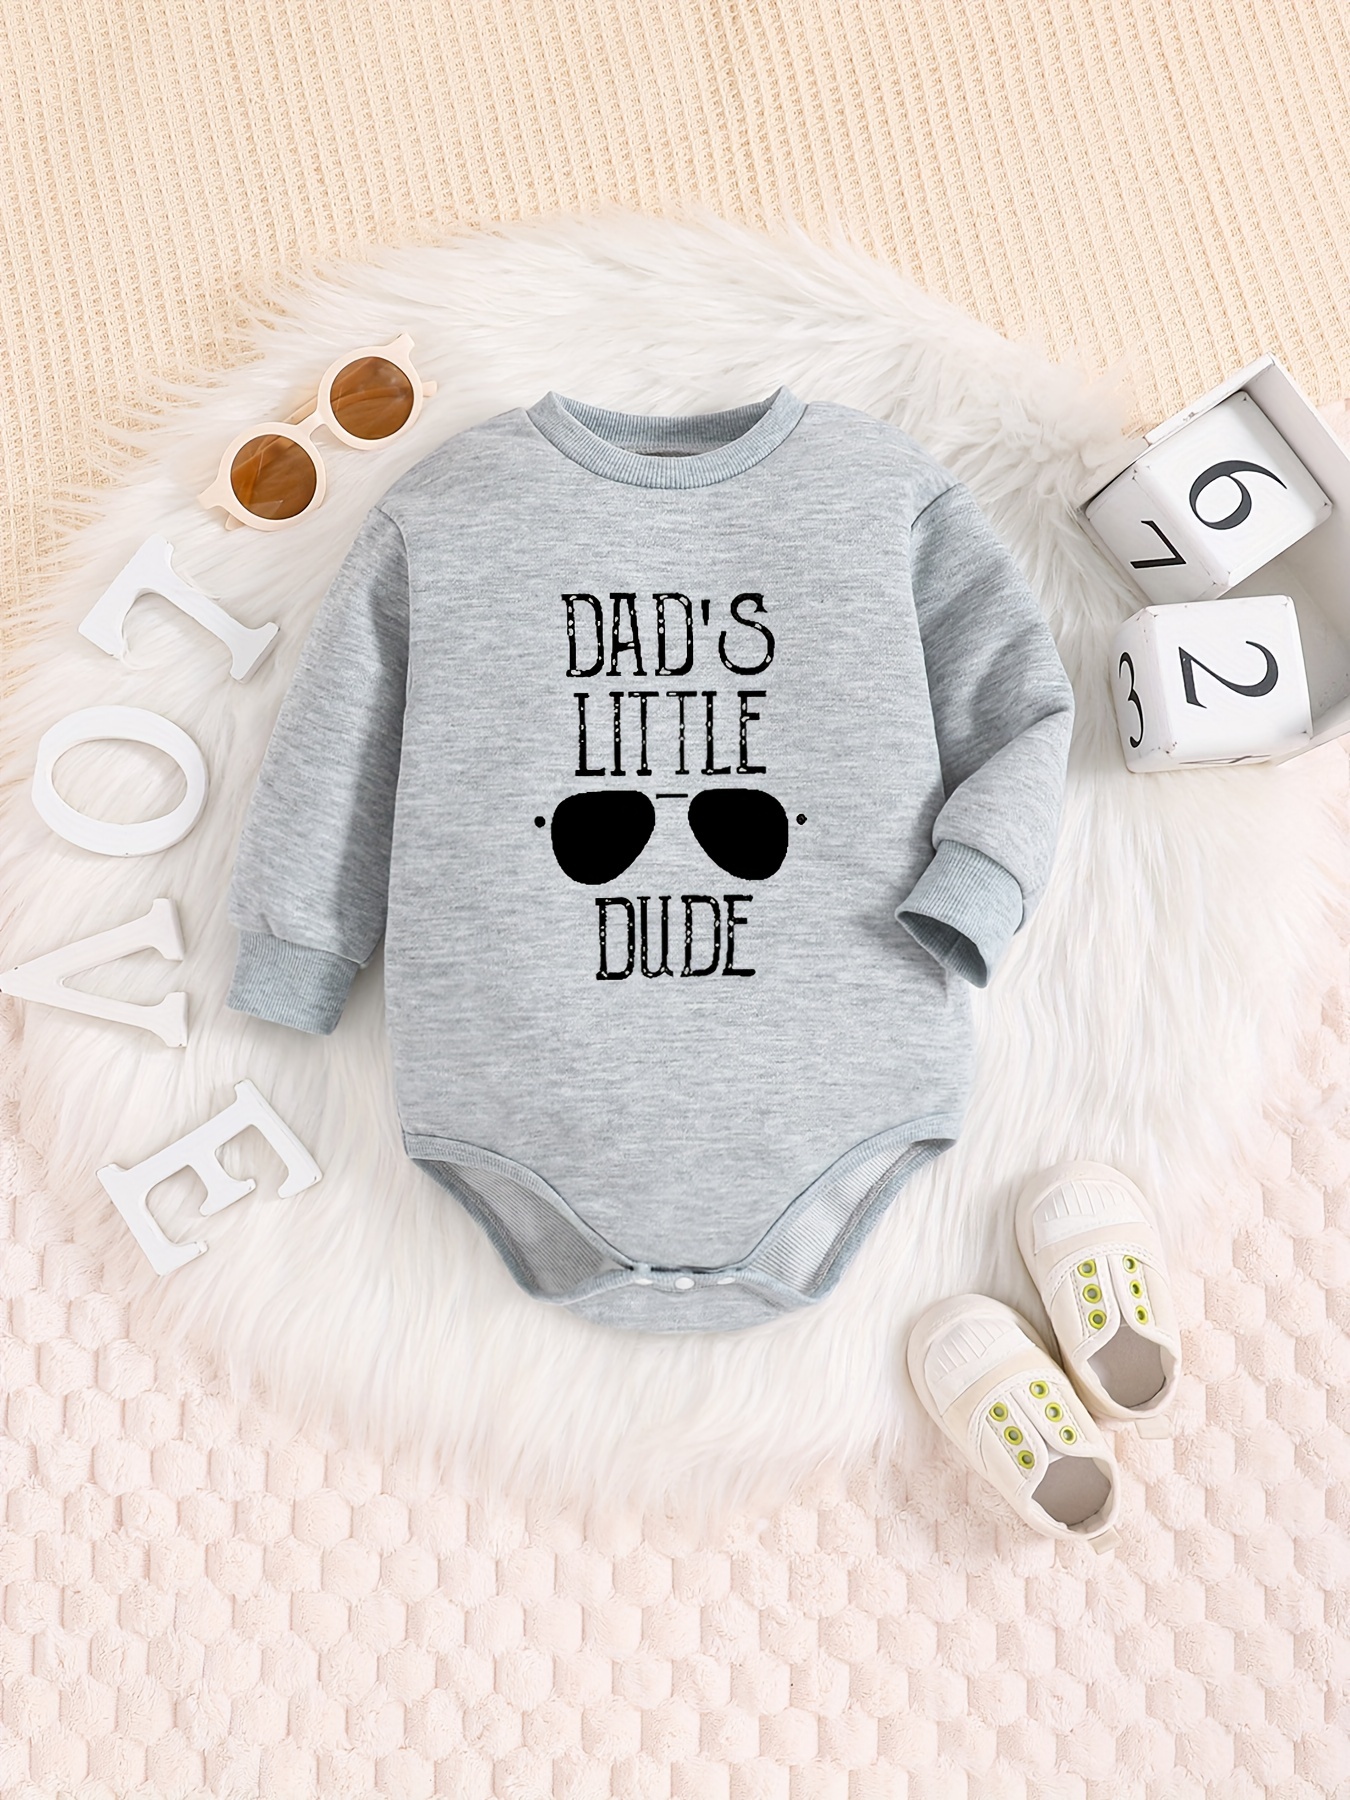 男の子の赤ちゃんかわいいdads Little Dudeプリントスウェットシャツ